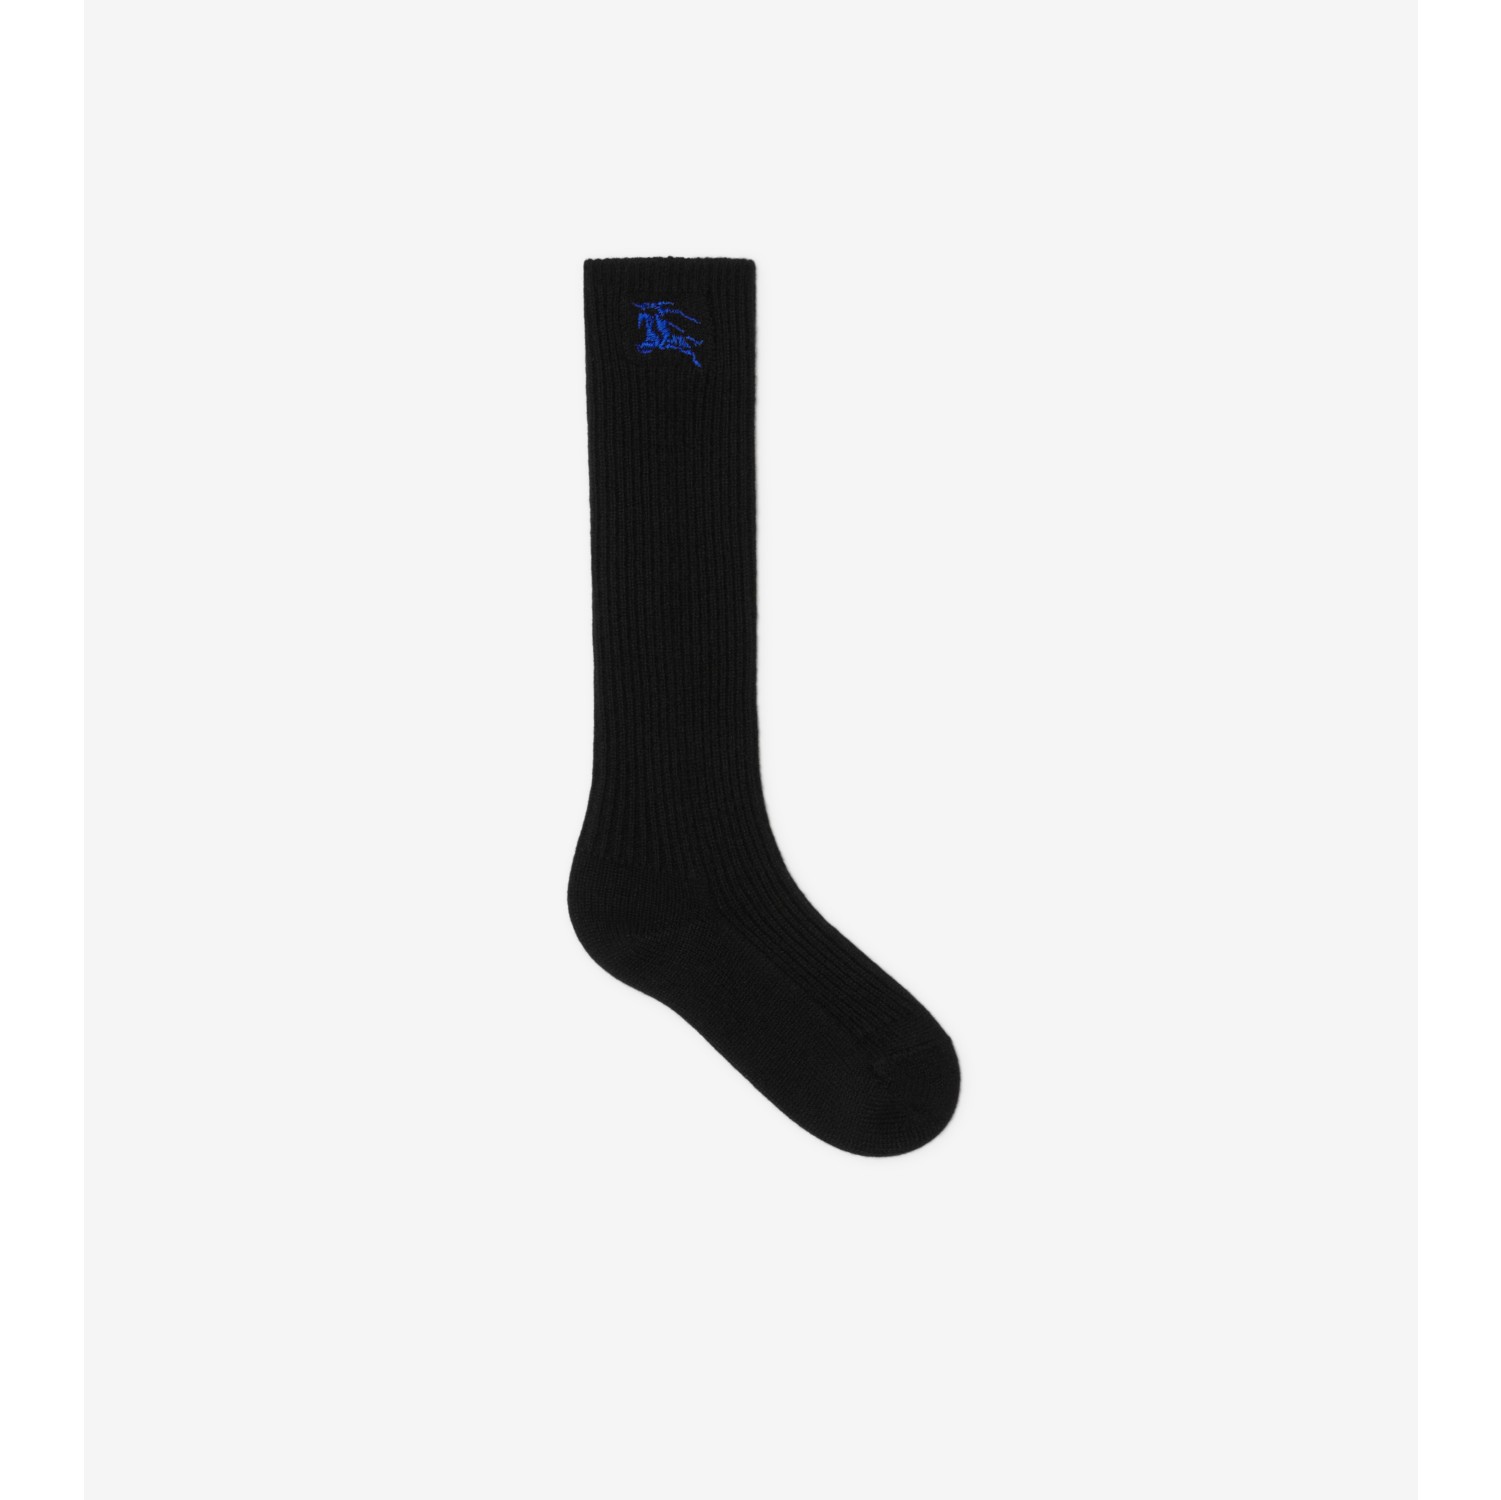 Socks in Black